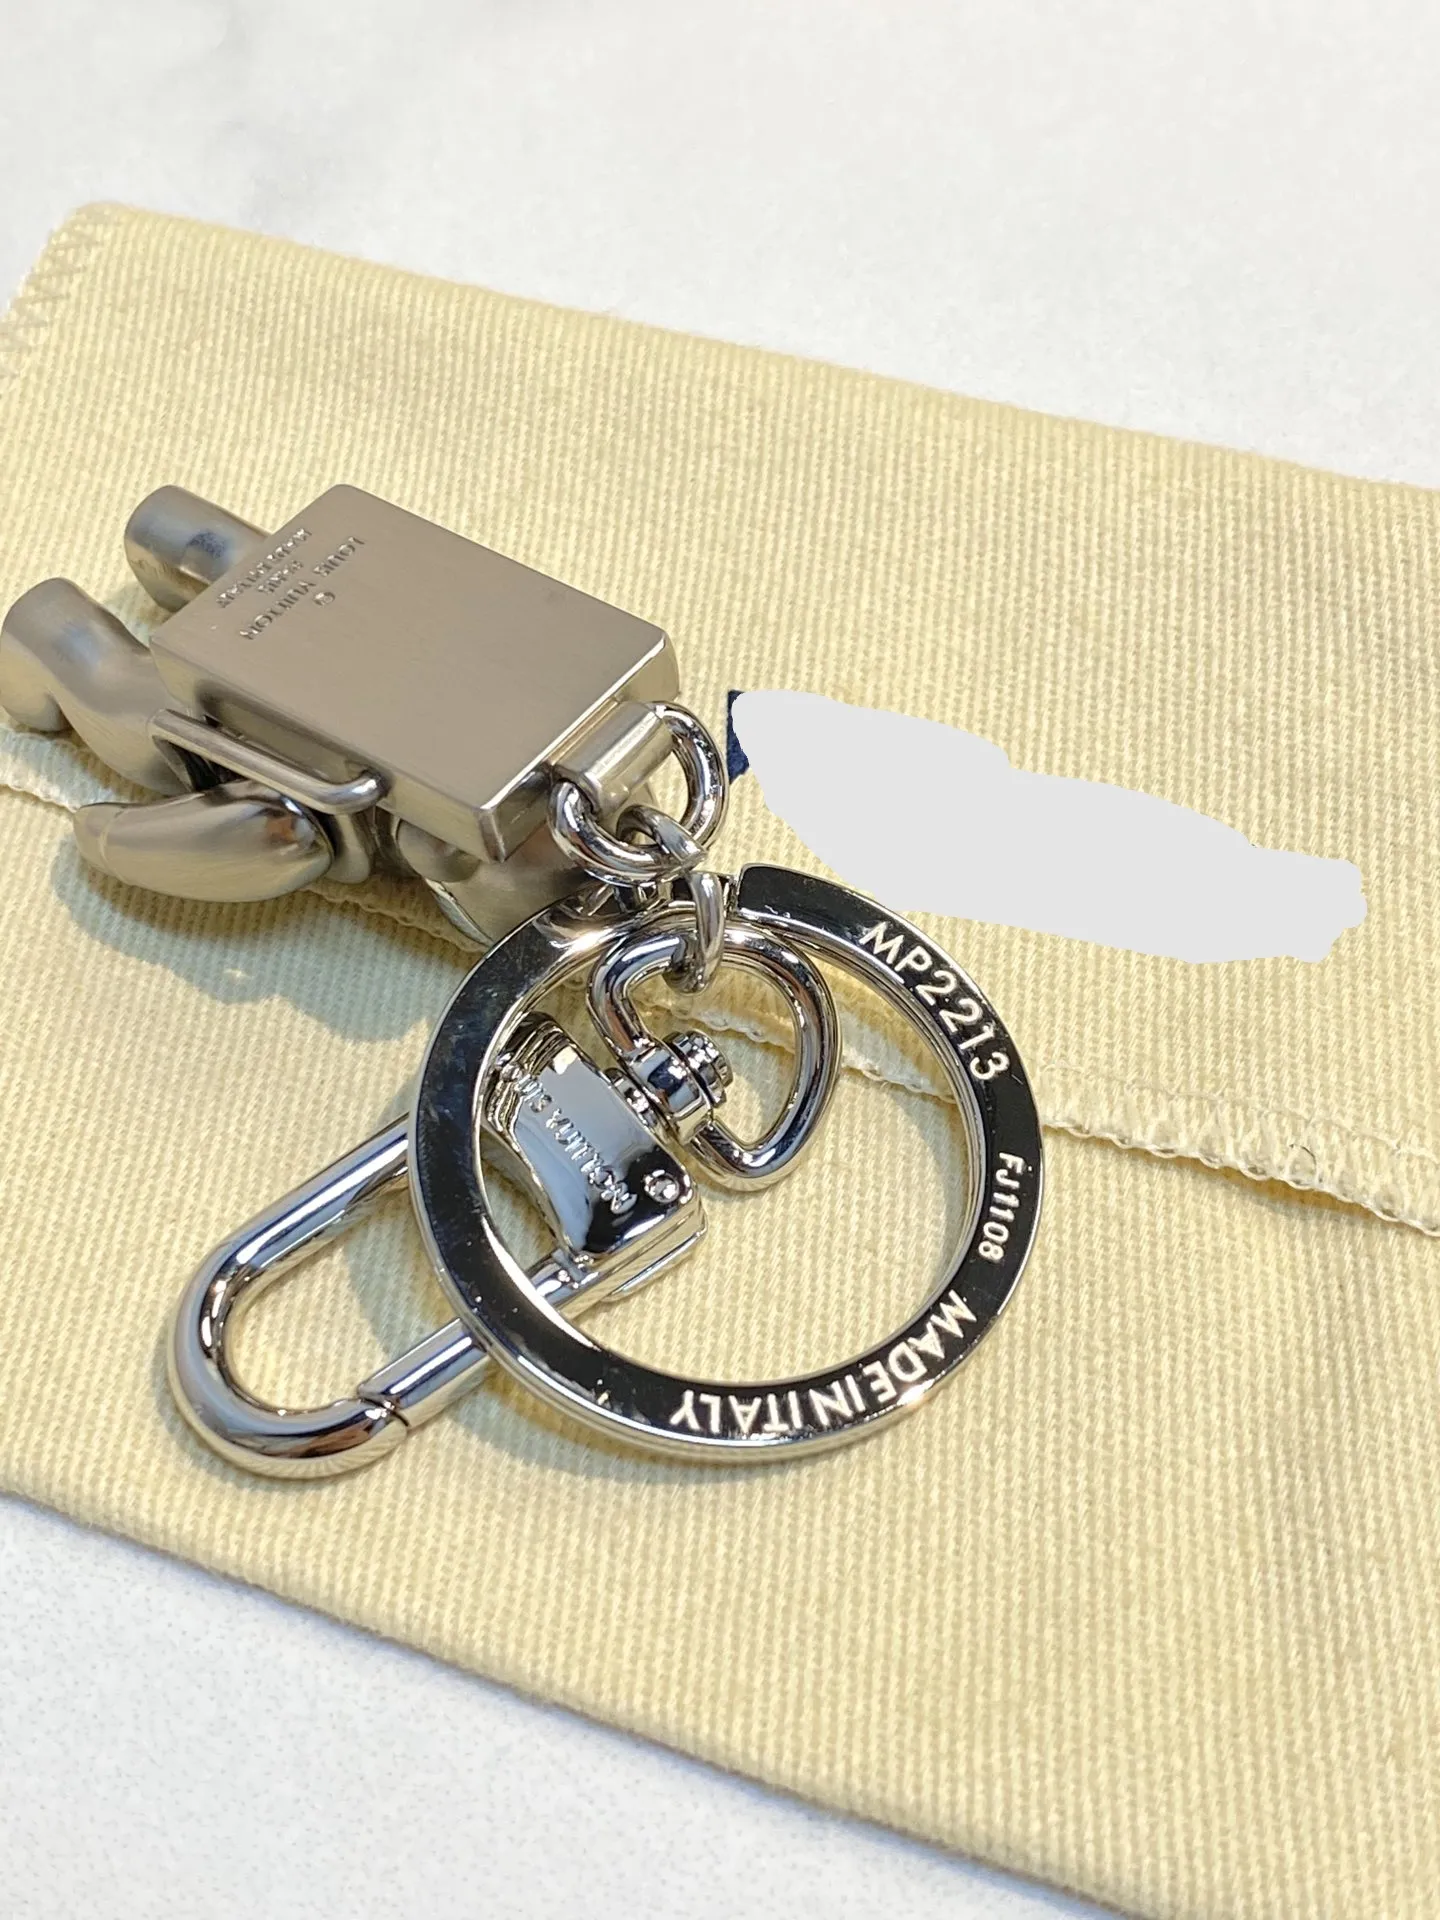 Silver spaceman key chain bag Pendant